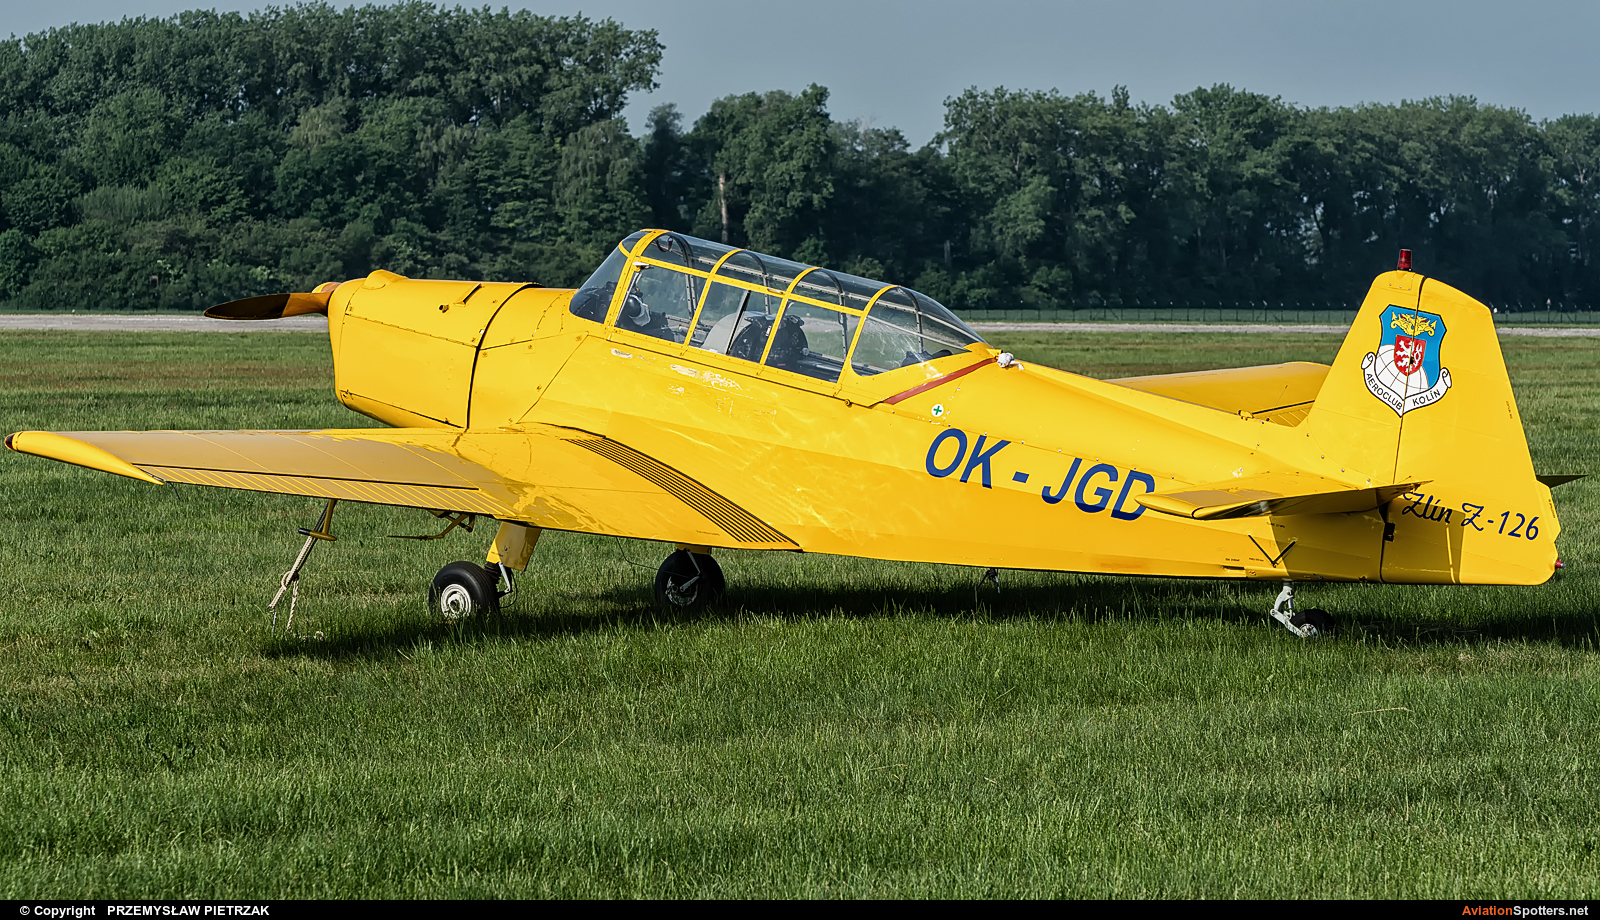 Aeroklub Kolín  -  Z-126  (OK-JGD) By PRZEMYSŁAW PIETRZAK (PEPE74)